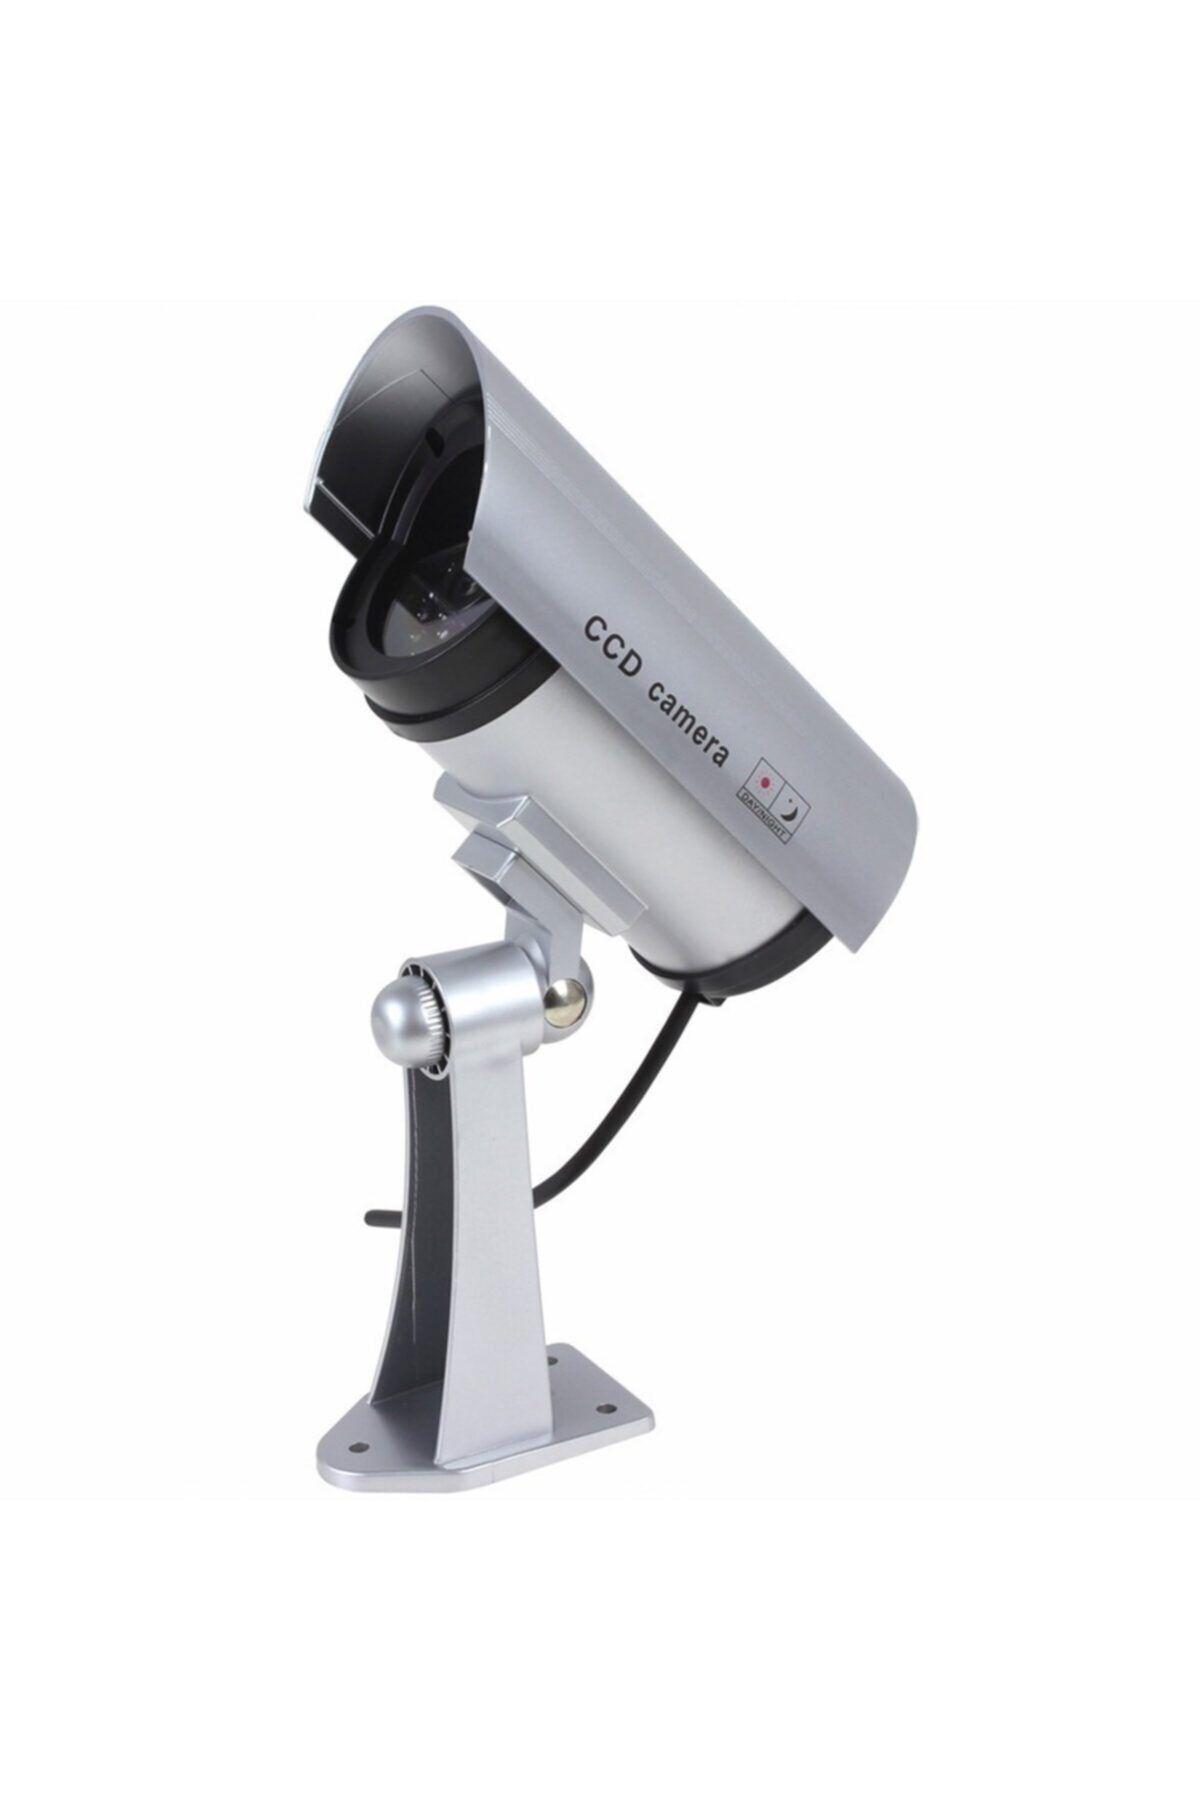 epazzar Sahte Güvenlik Kamerası İç Ve Dış Mekan Için %100 Gerçekçi Işıklı Sahte Kamera